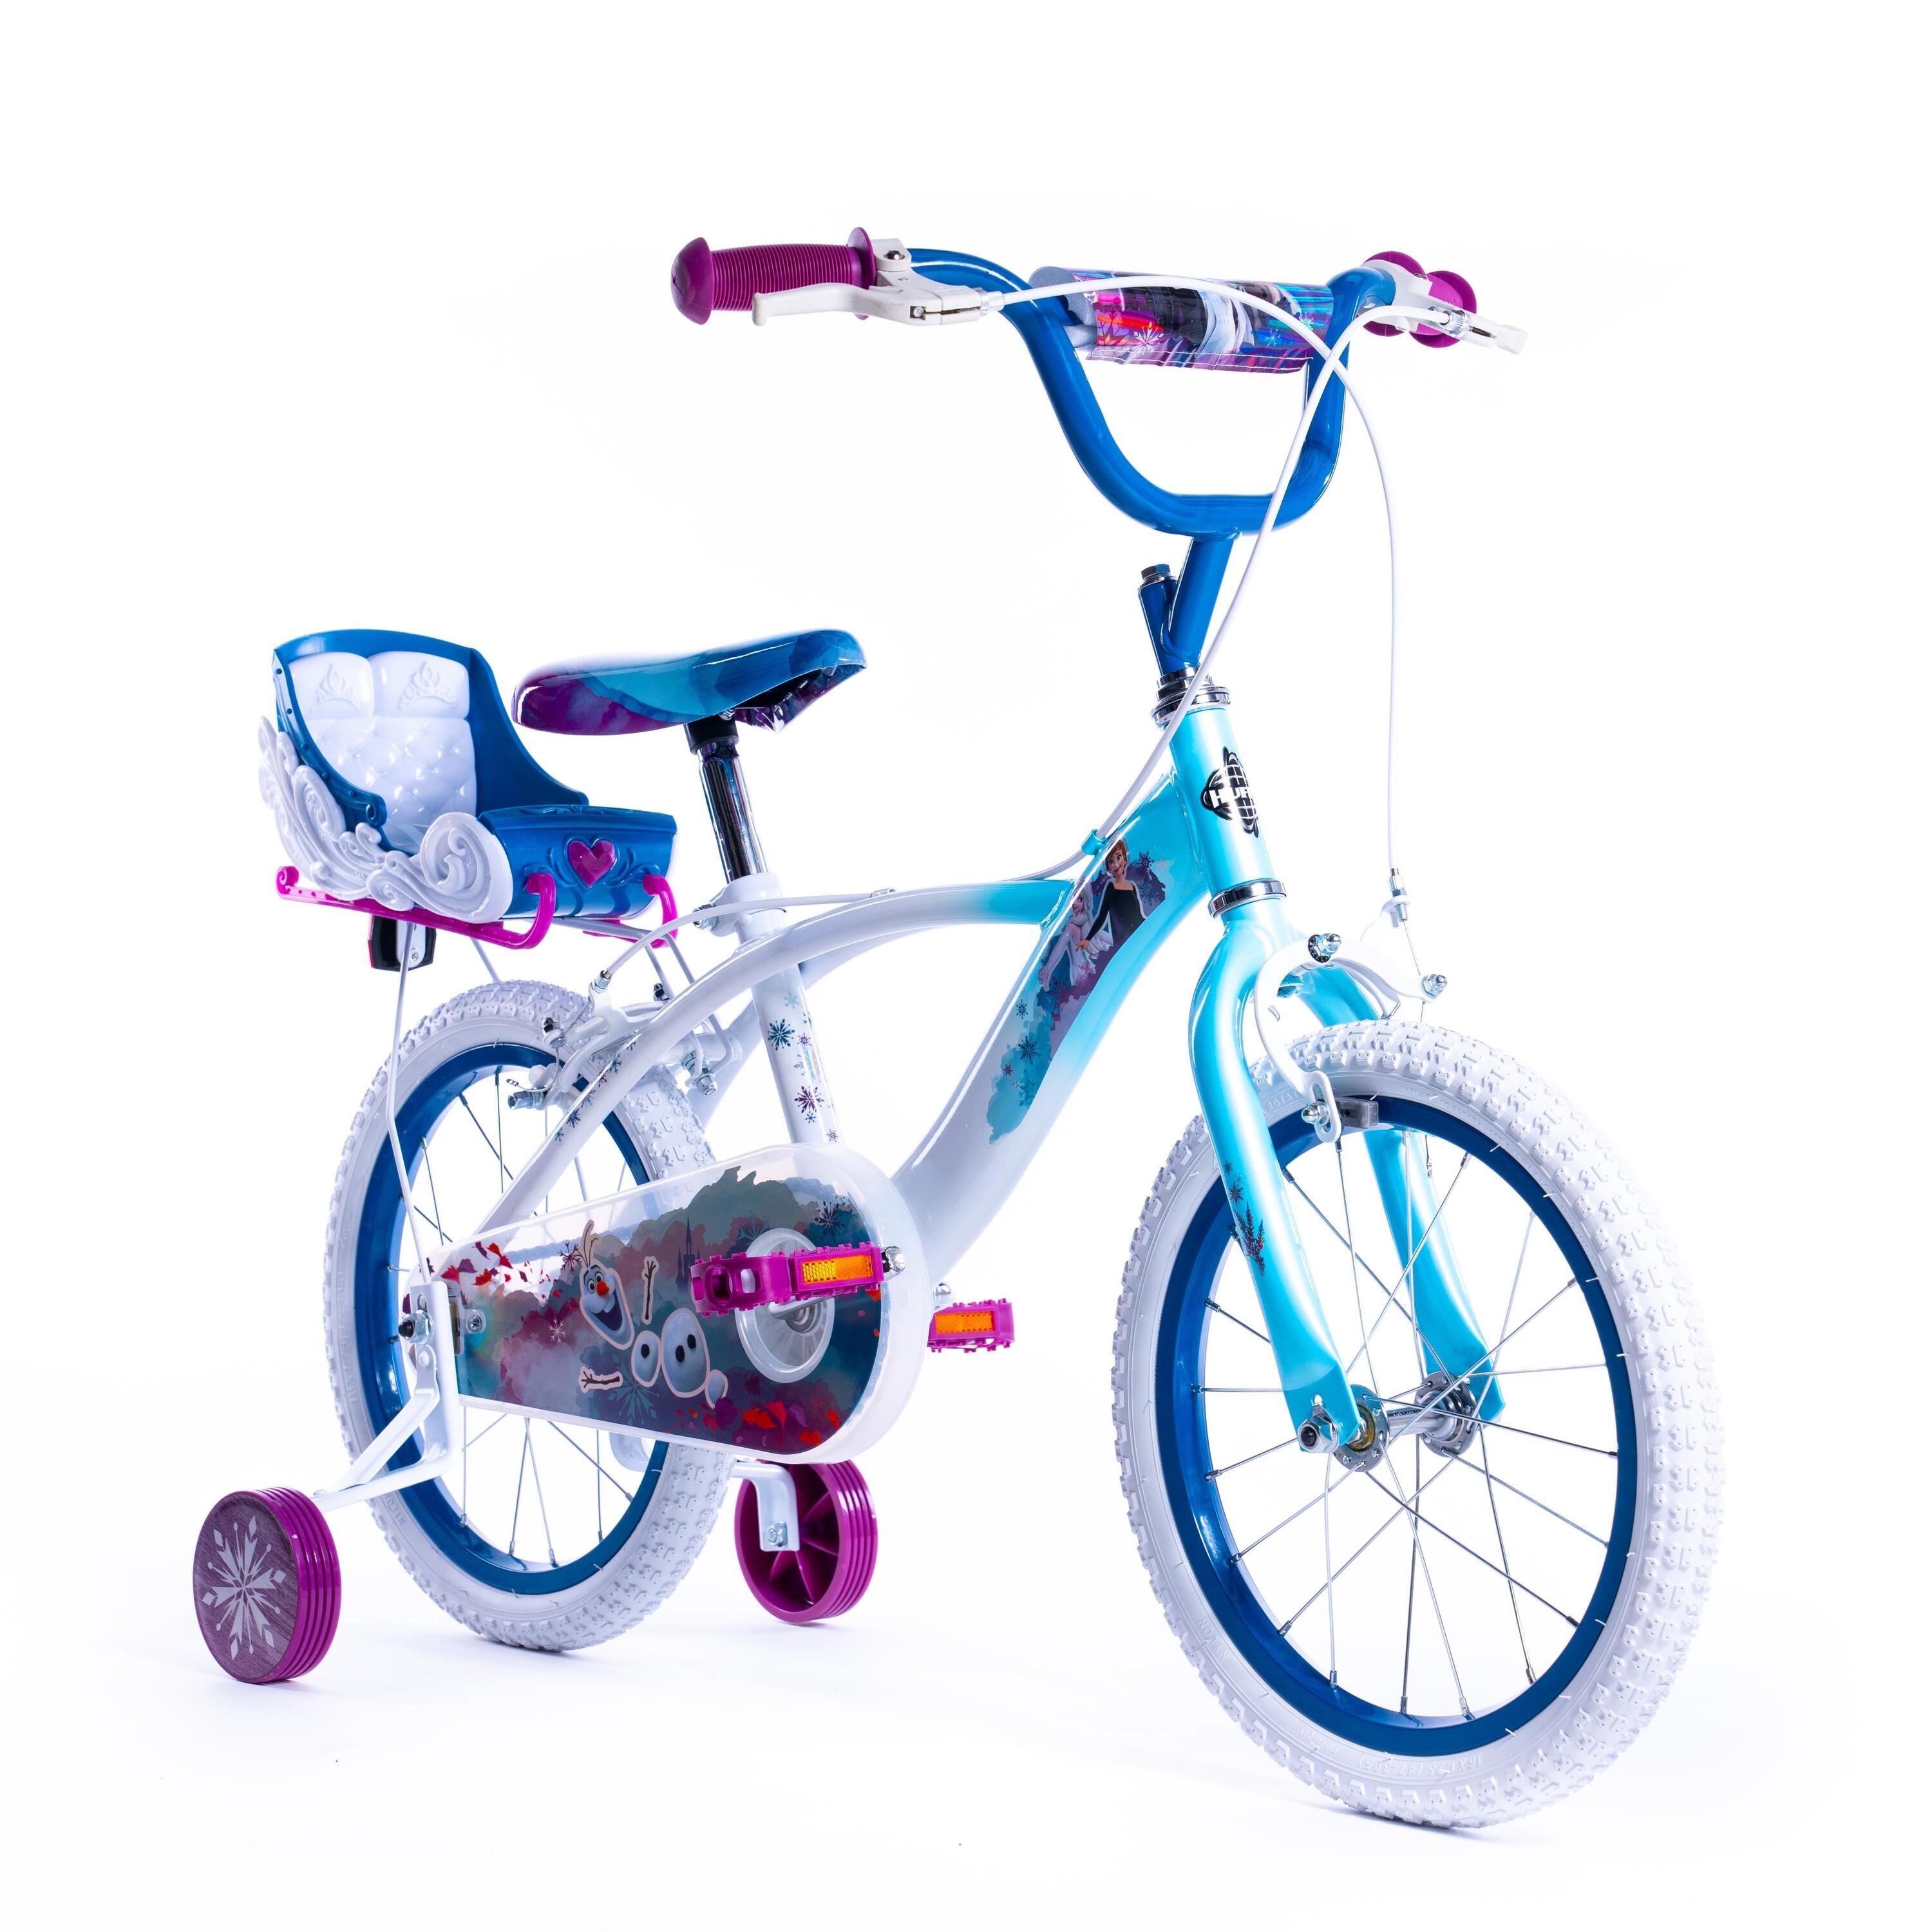 Disney Frozen Girls 16 Inch Bike + Stabilisers 1/8